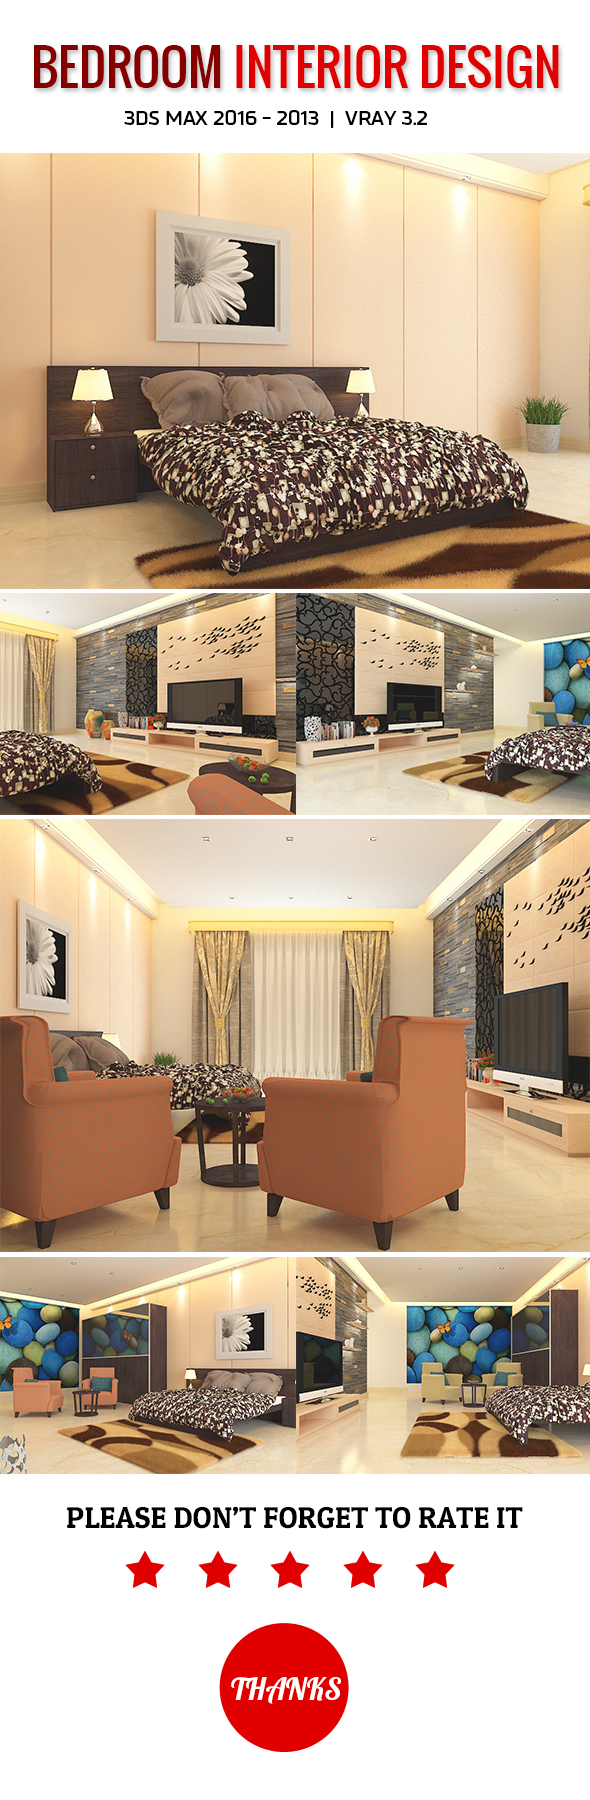 Bedroom Interior Design - 3Docean 19844520